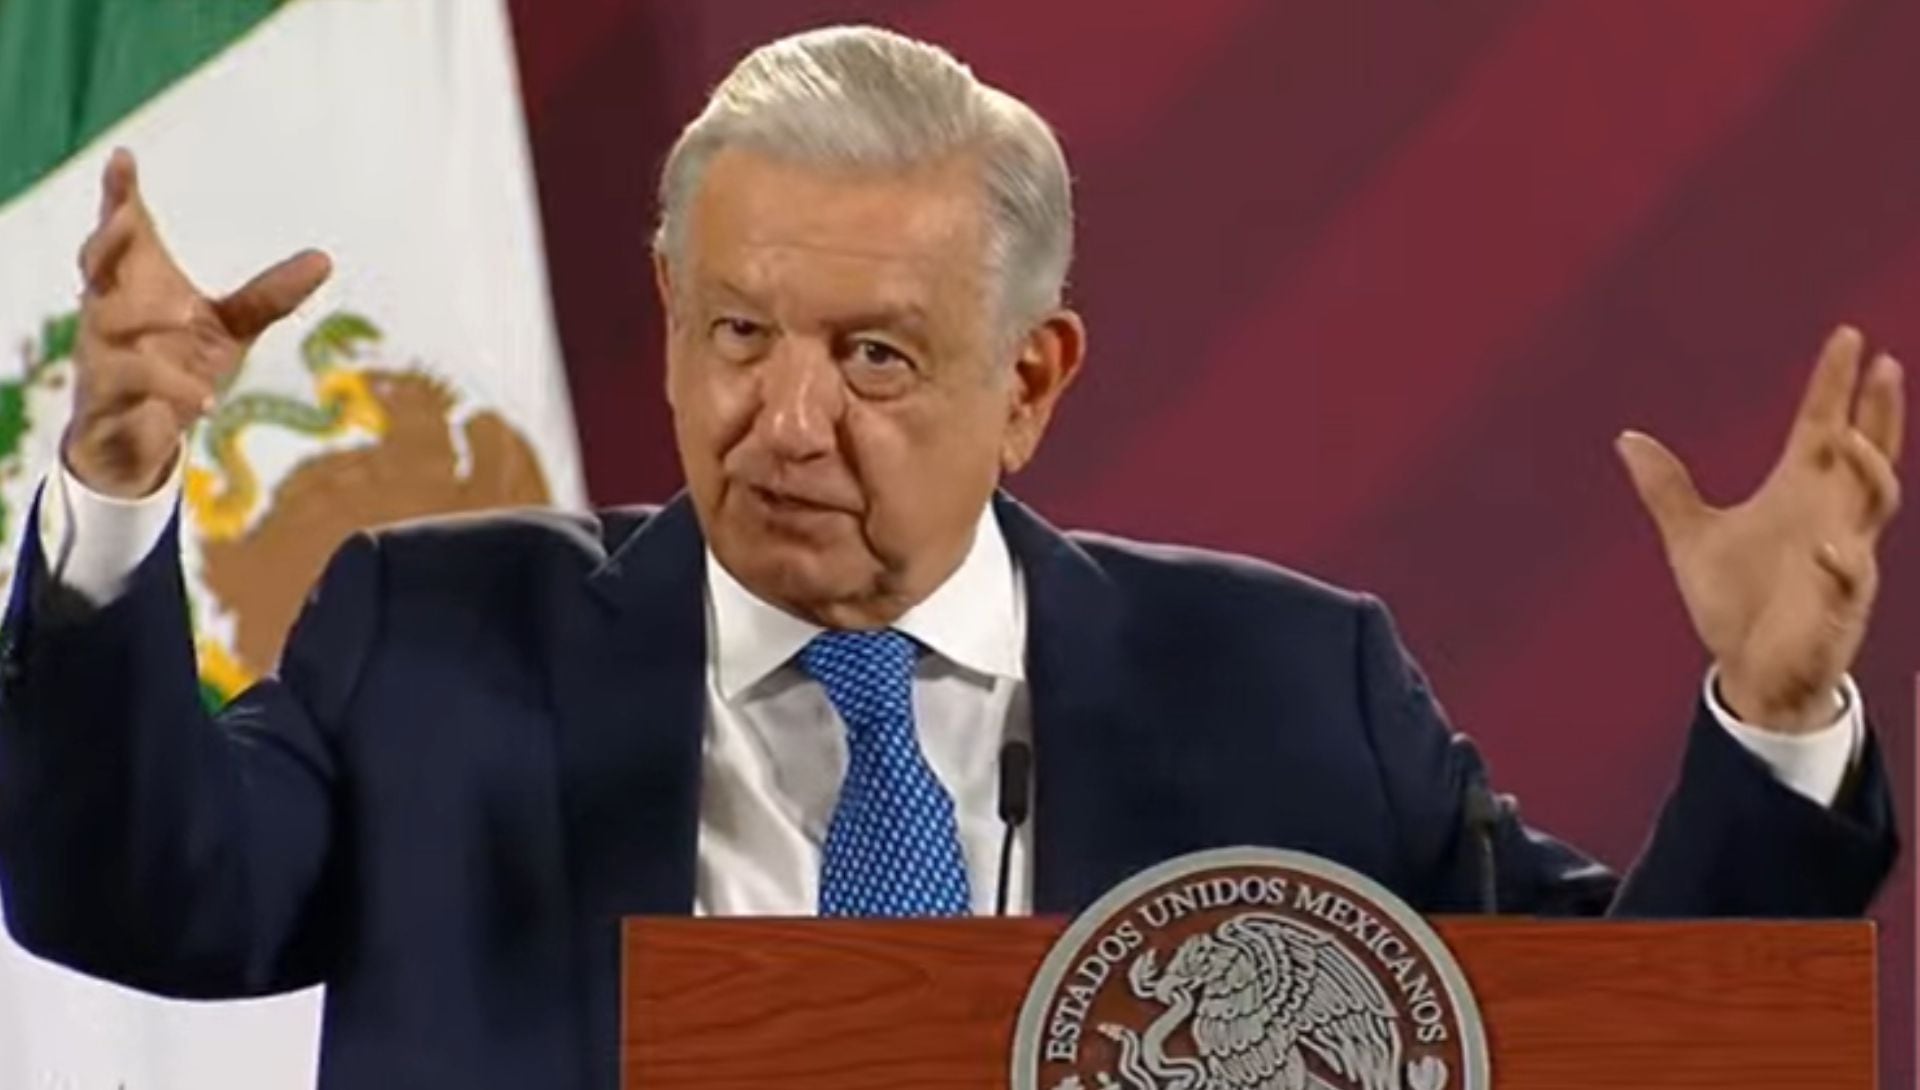 El presidente López Obrador evadió los señalamientos en torno a un supuesto nexo entre García Harfuch y García Luna. Foto: Gobierno de México